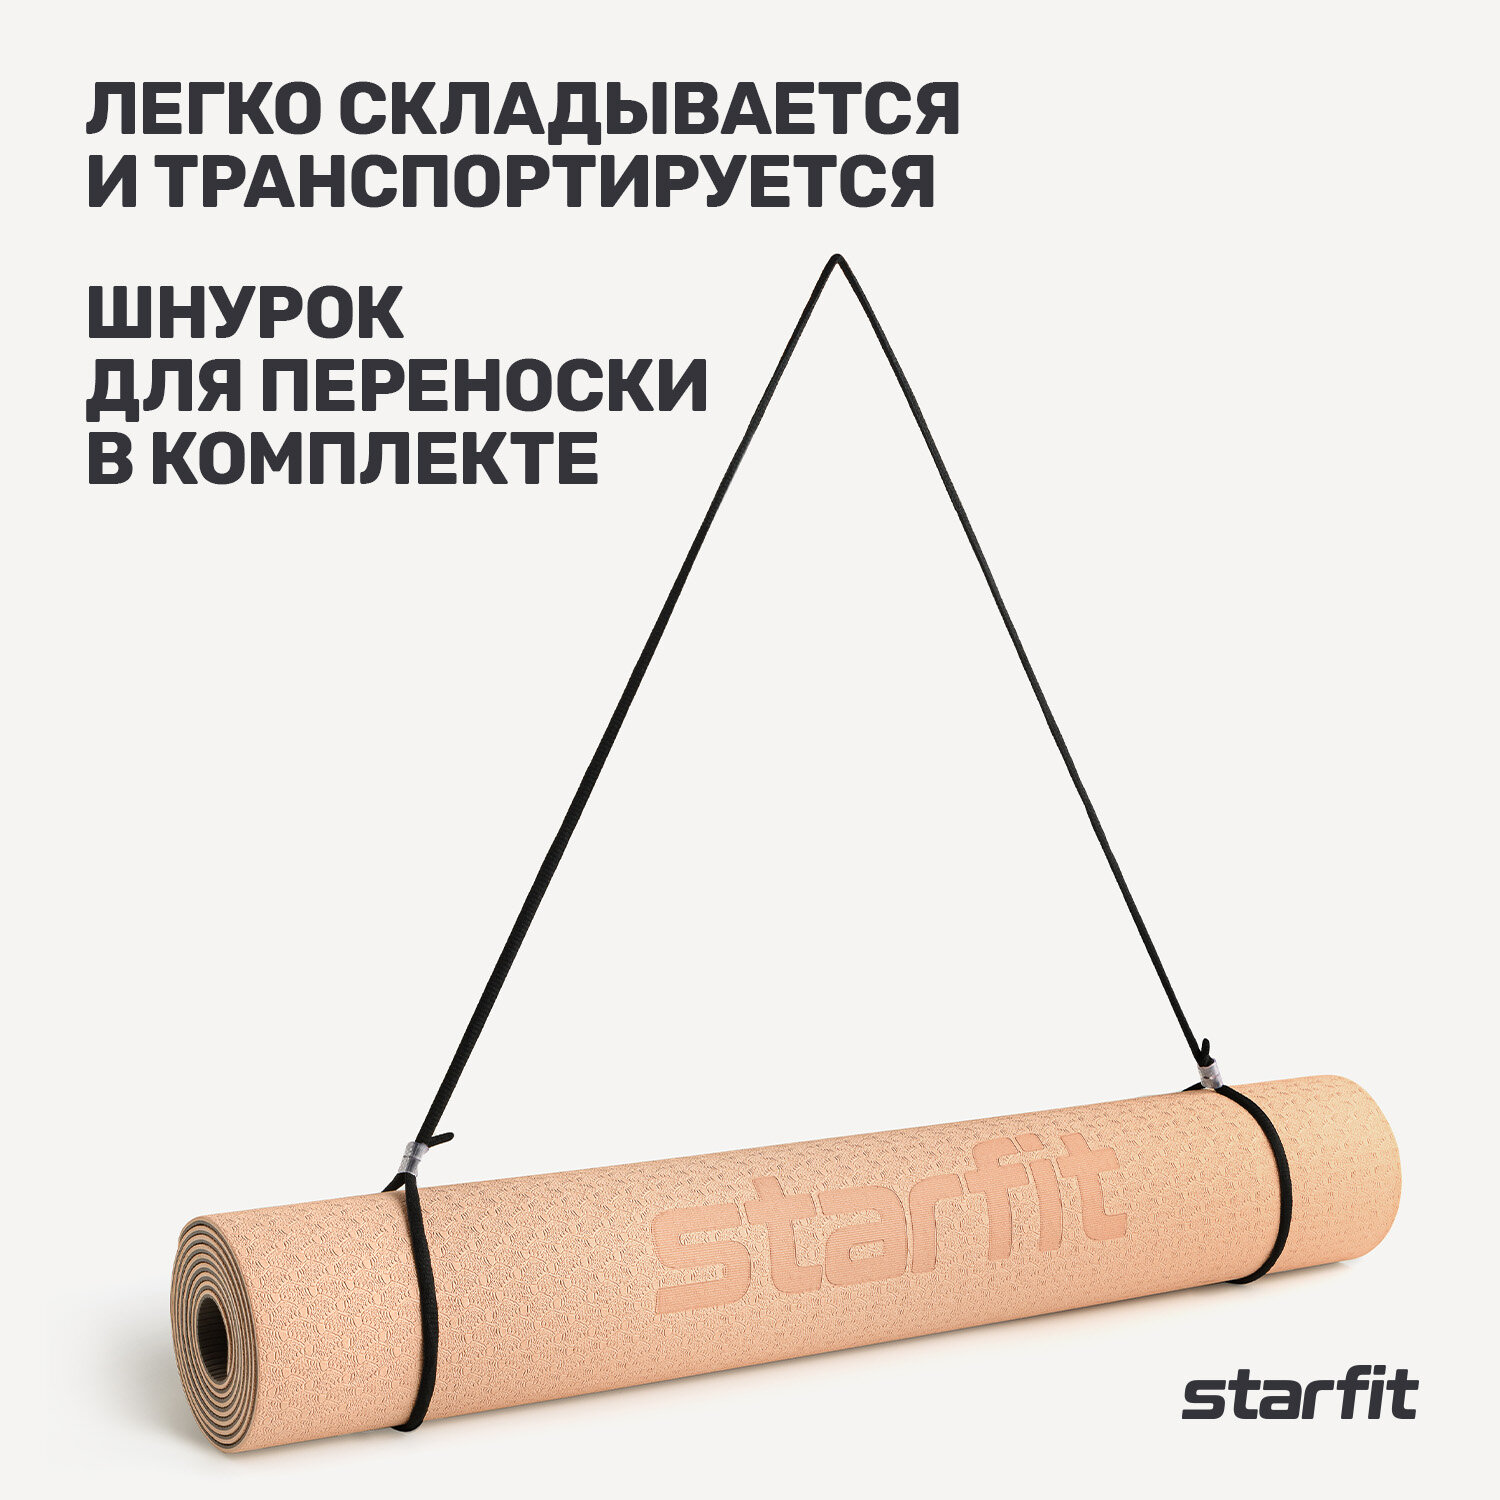 Коврик для йоги и фитнеса STARFIT FM-201, TPE, 183x61x0,4 см, персиковый/серый с шнурком для переноски